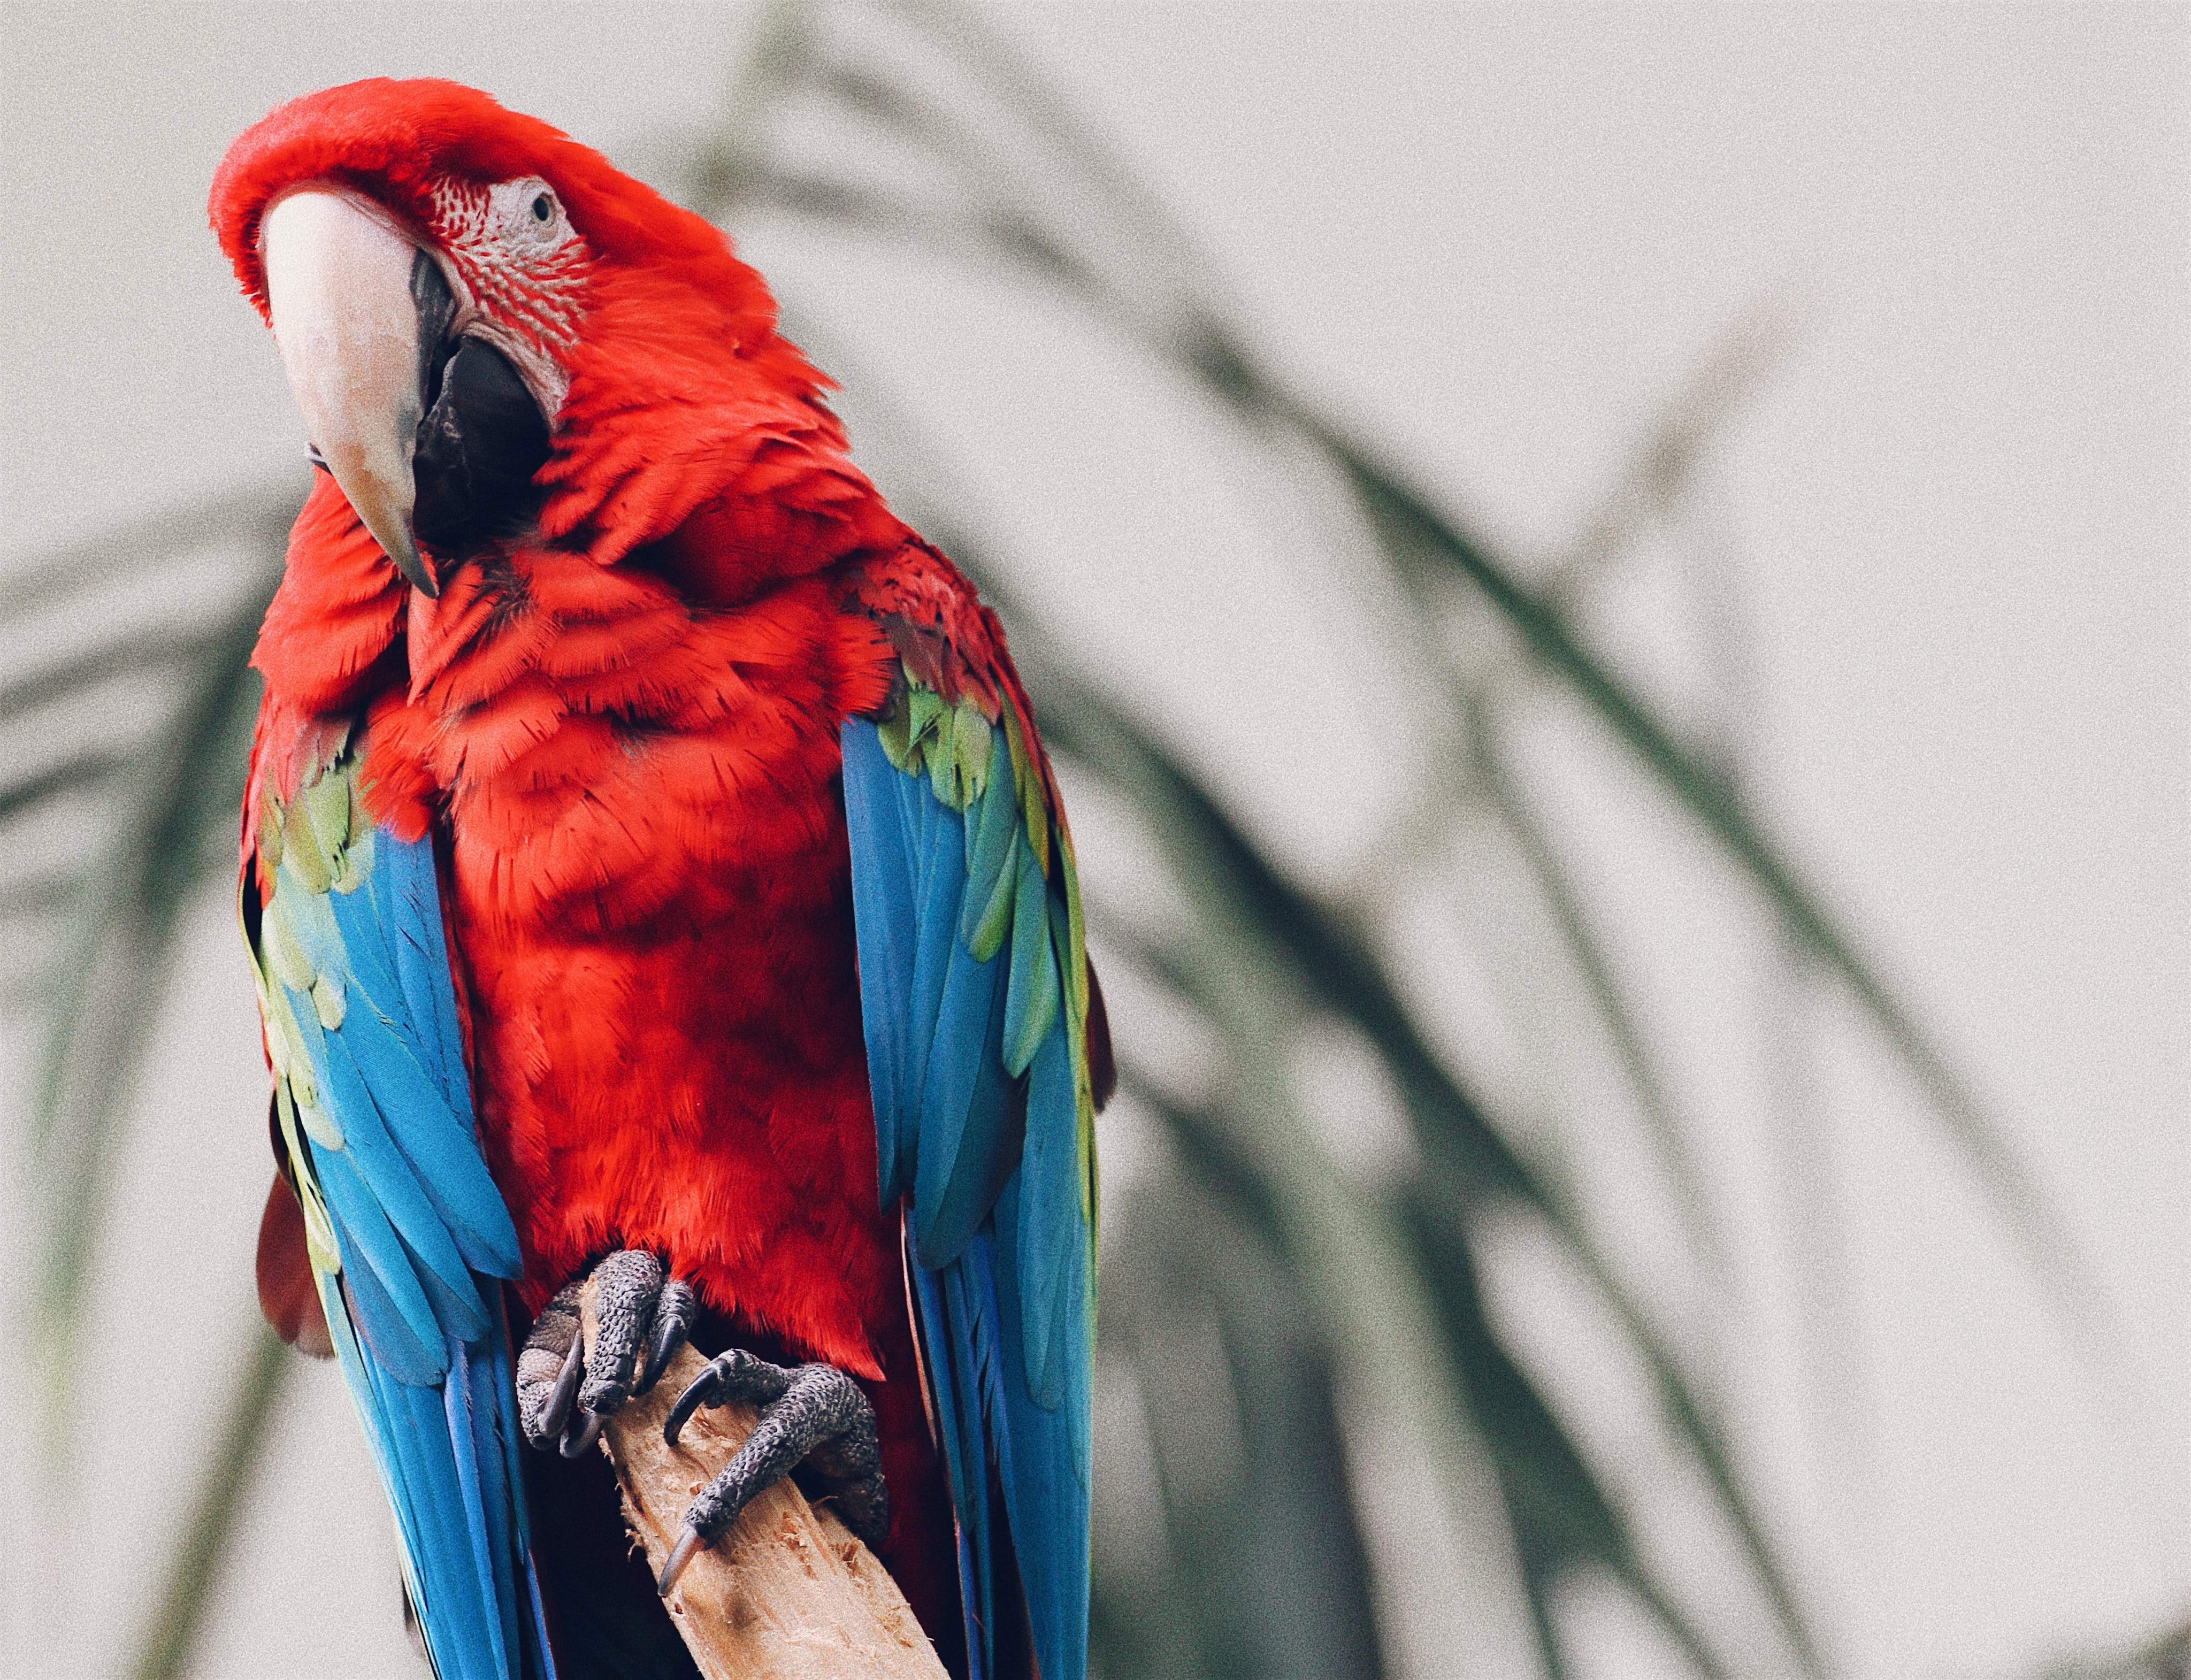 Бесплатное фото Попугай ара с красными перьями смотрит на фотографа